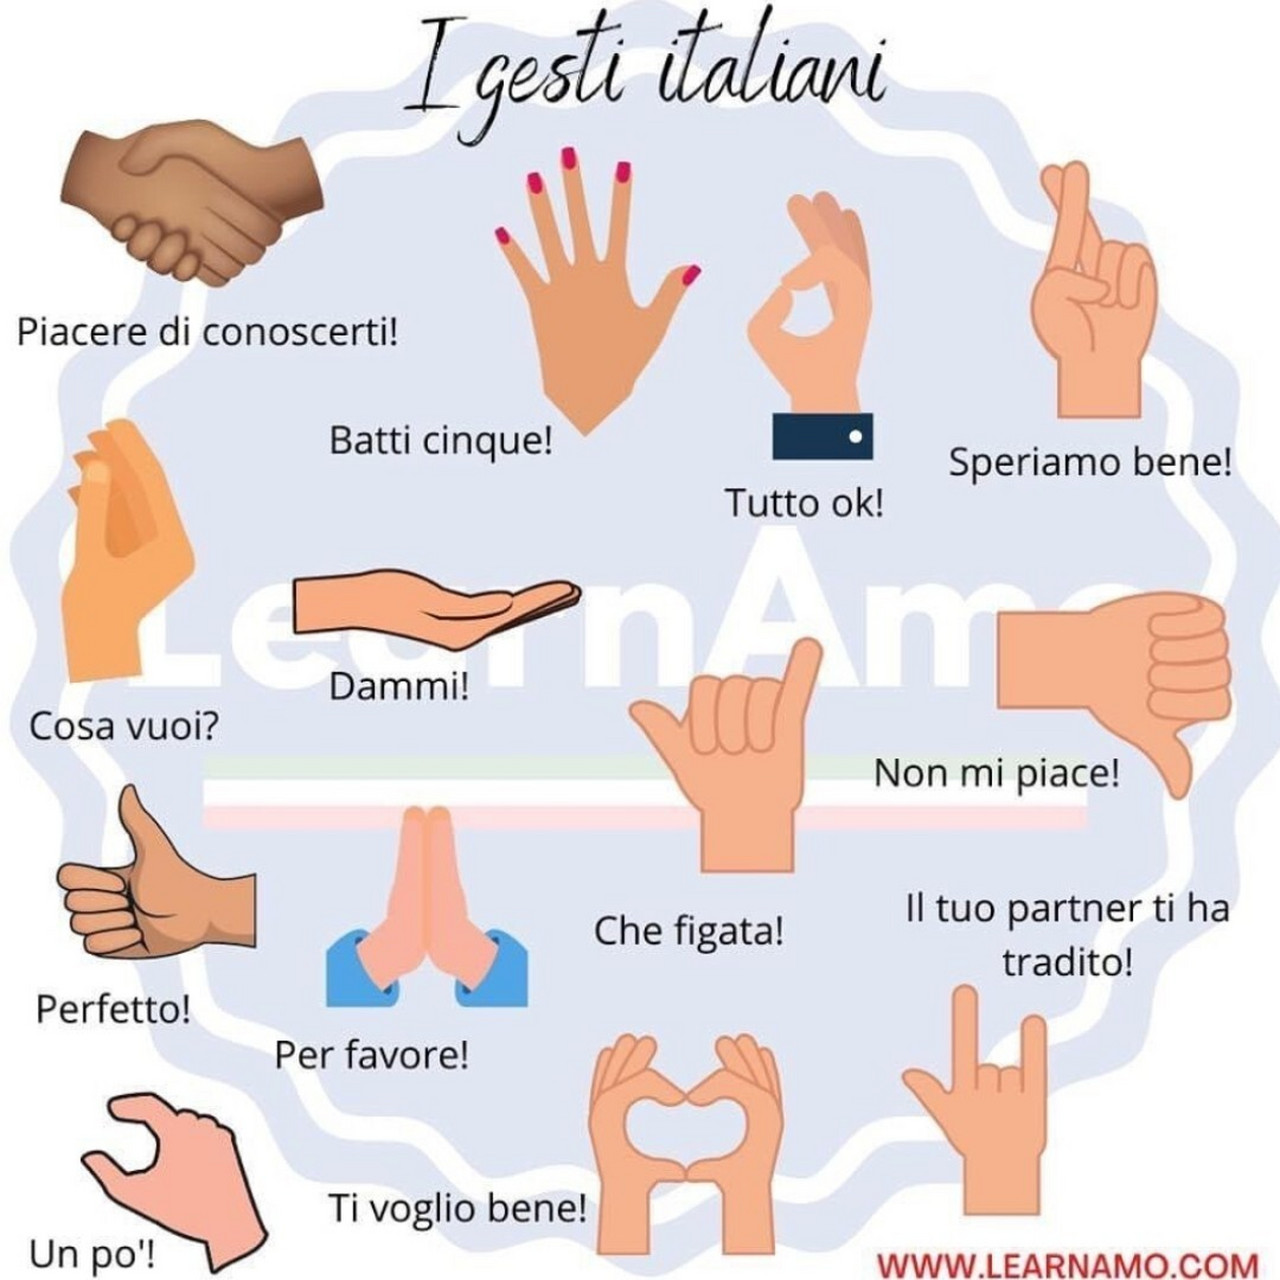 意大利人常用手势‖9495 经常看到意大利人讲话时伴随着手势,这些